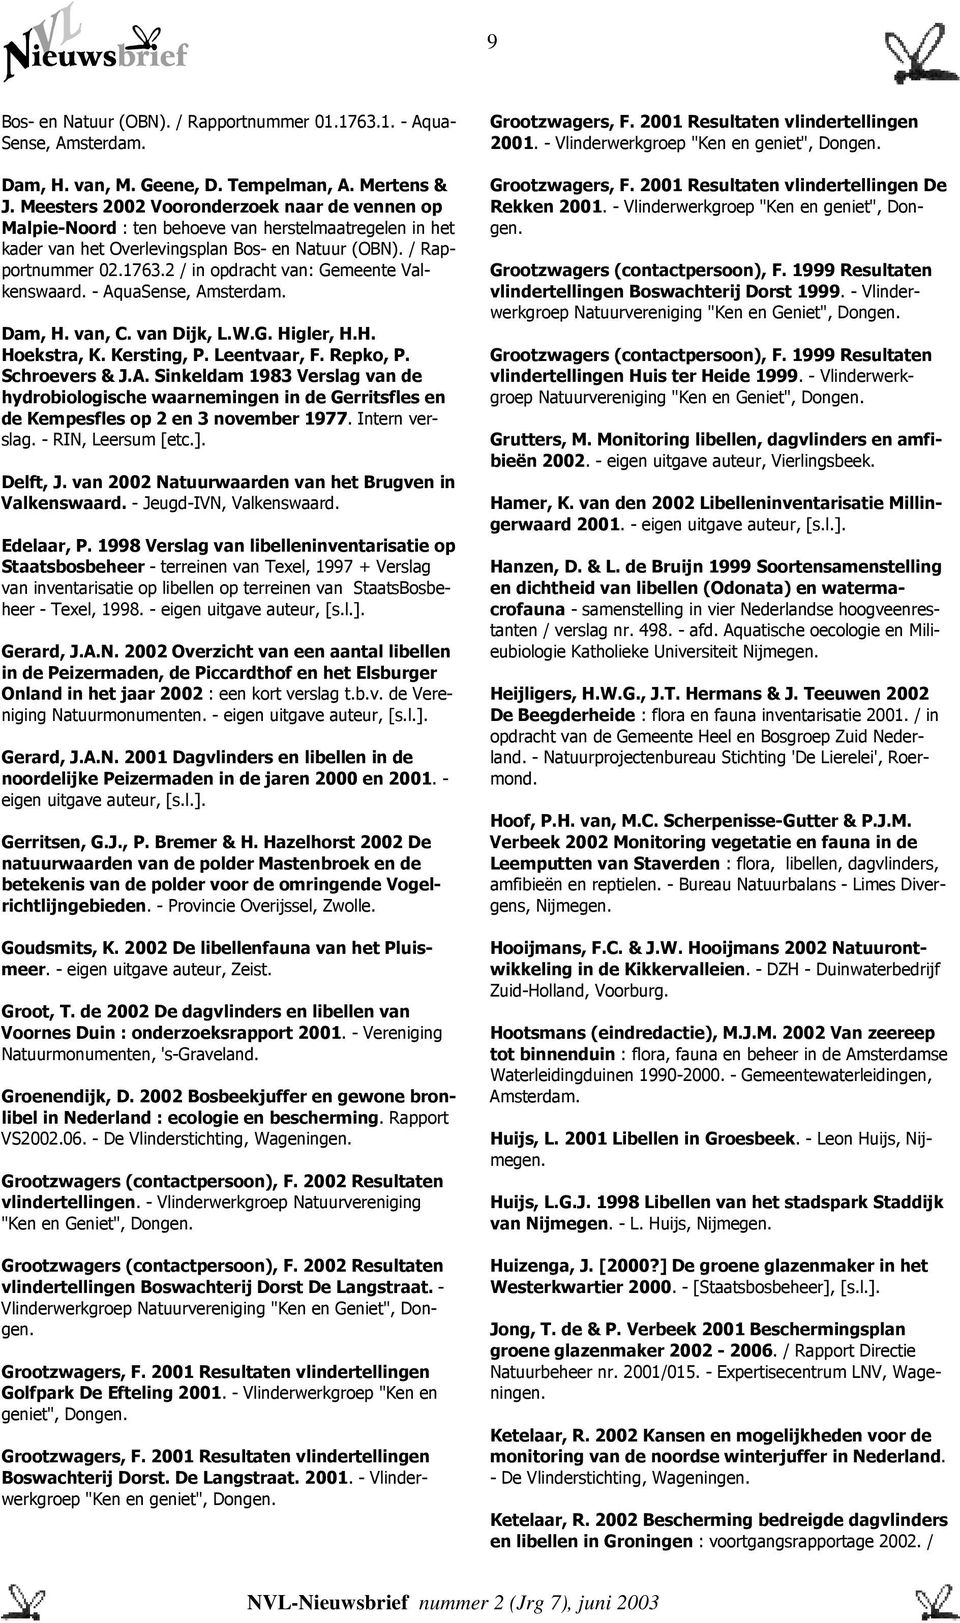 2 / in opdracht van: Gemeente Valkenswaard. - AquaSense, Amsterdam. Dam, H. van, C. van Dijk, L.W.G. Higler, H.H. Hoekstra, K. Kersting, P. Leentvaar, F. Repko, P. Schroevers & J.A. Sinkeldam 1983 Verslag van de hydrobiologische waarnemingen in de Gerritsfles en de Kempesfles op 2 en 3 november 1977.